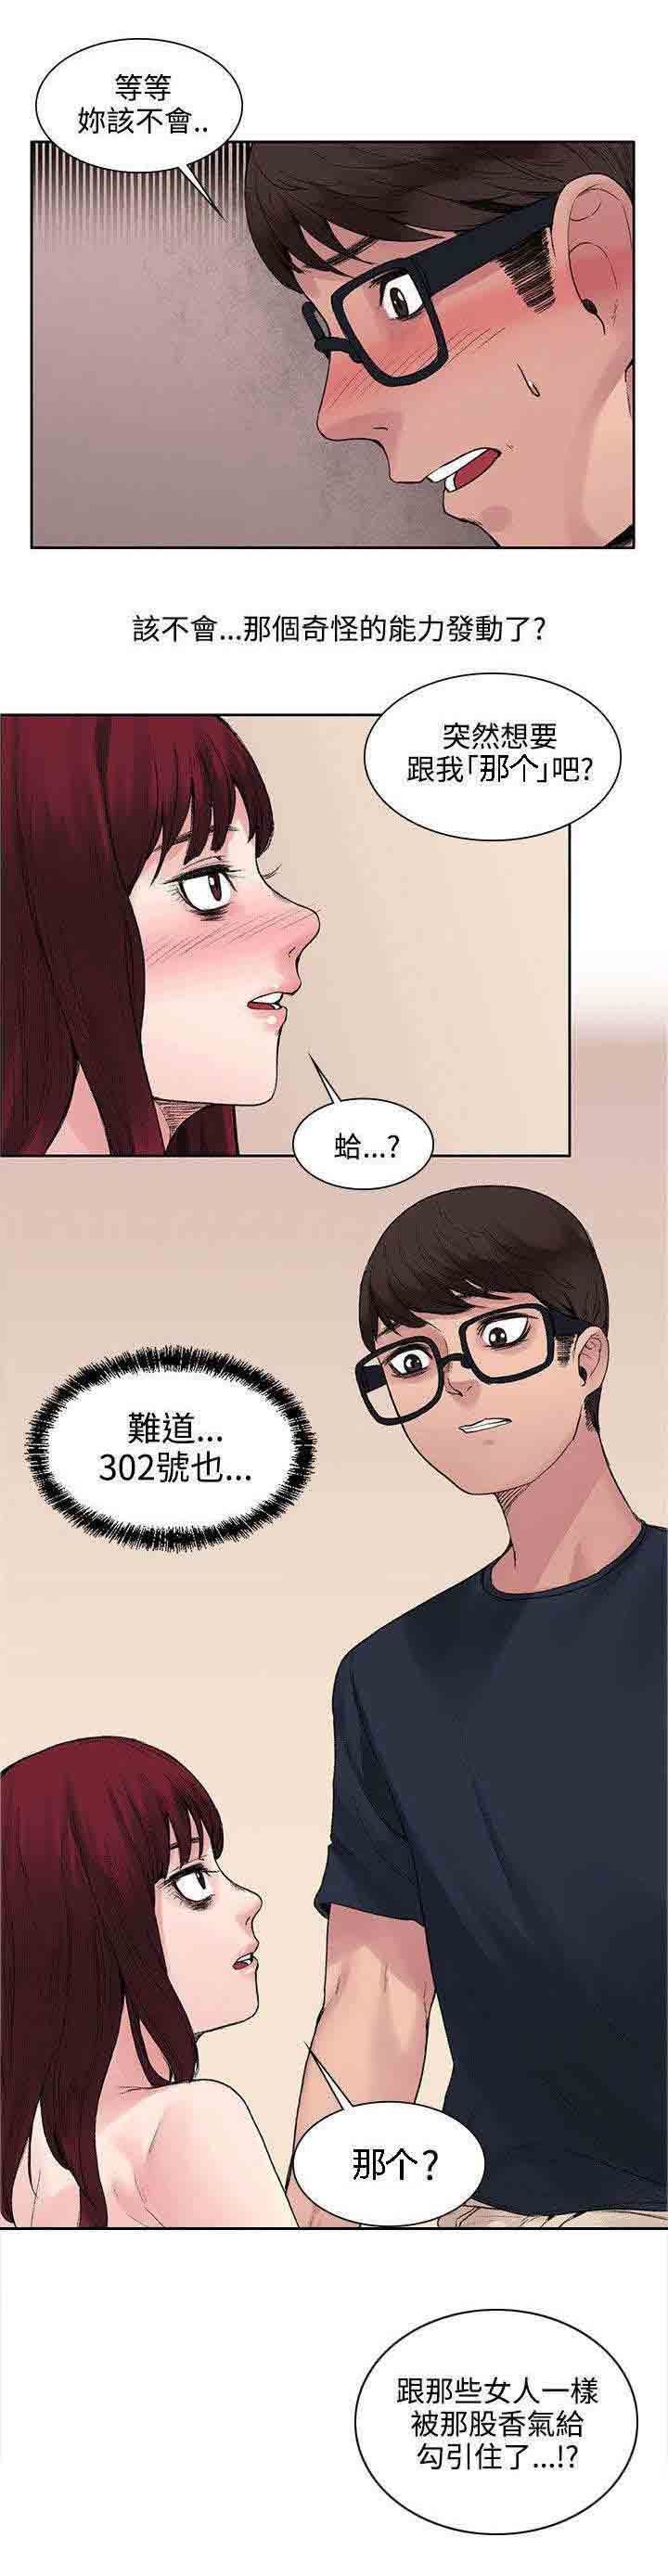 韩国污漫画 甜蜜的香氣 第18话能力又发动了 10